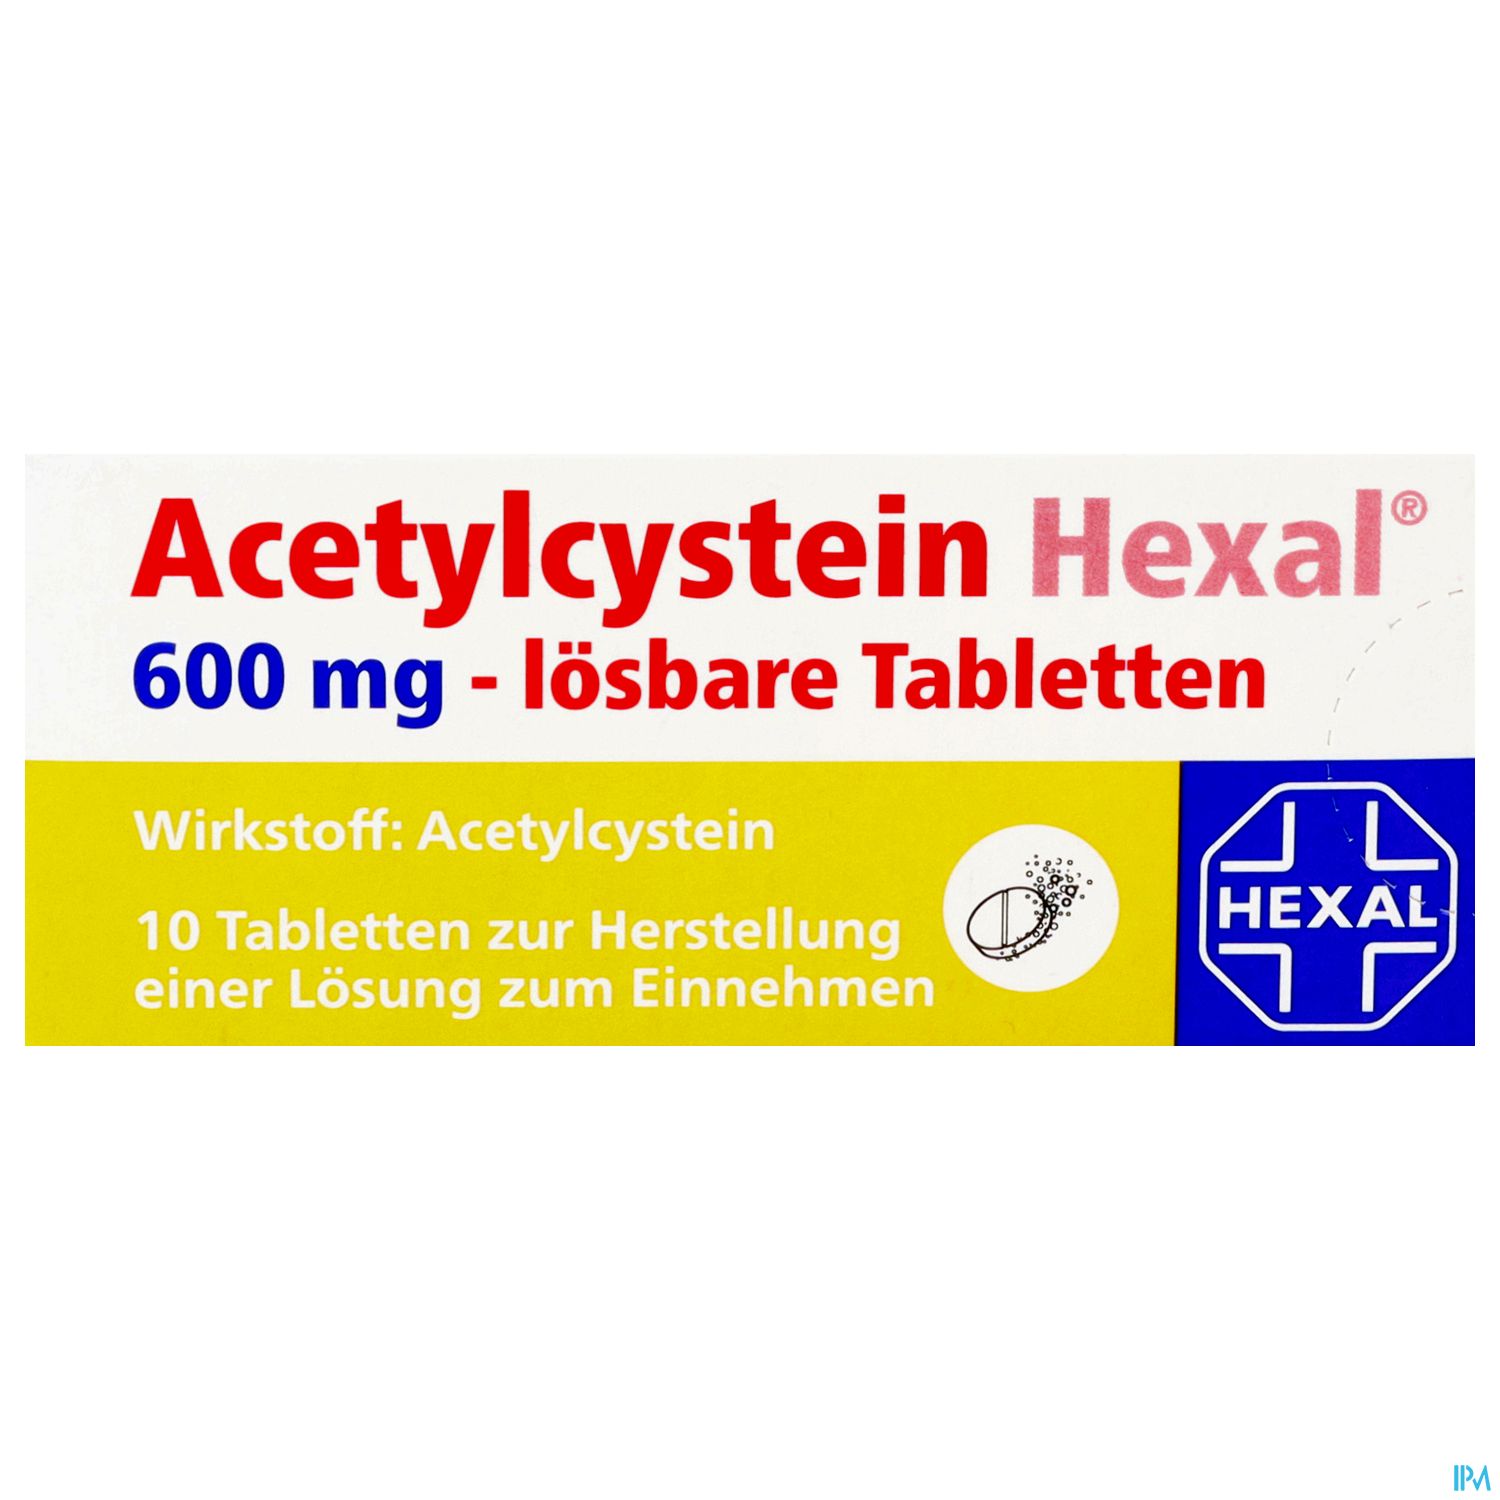 Acetylcystein Hexal 600 mg - lösbare Tabletten